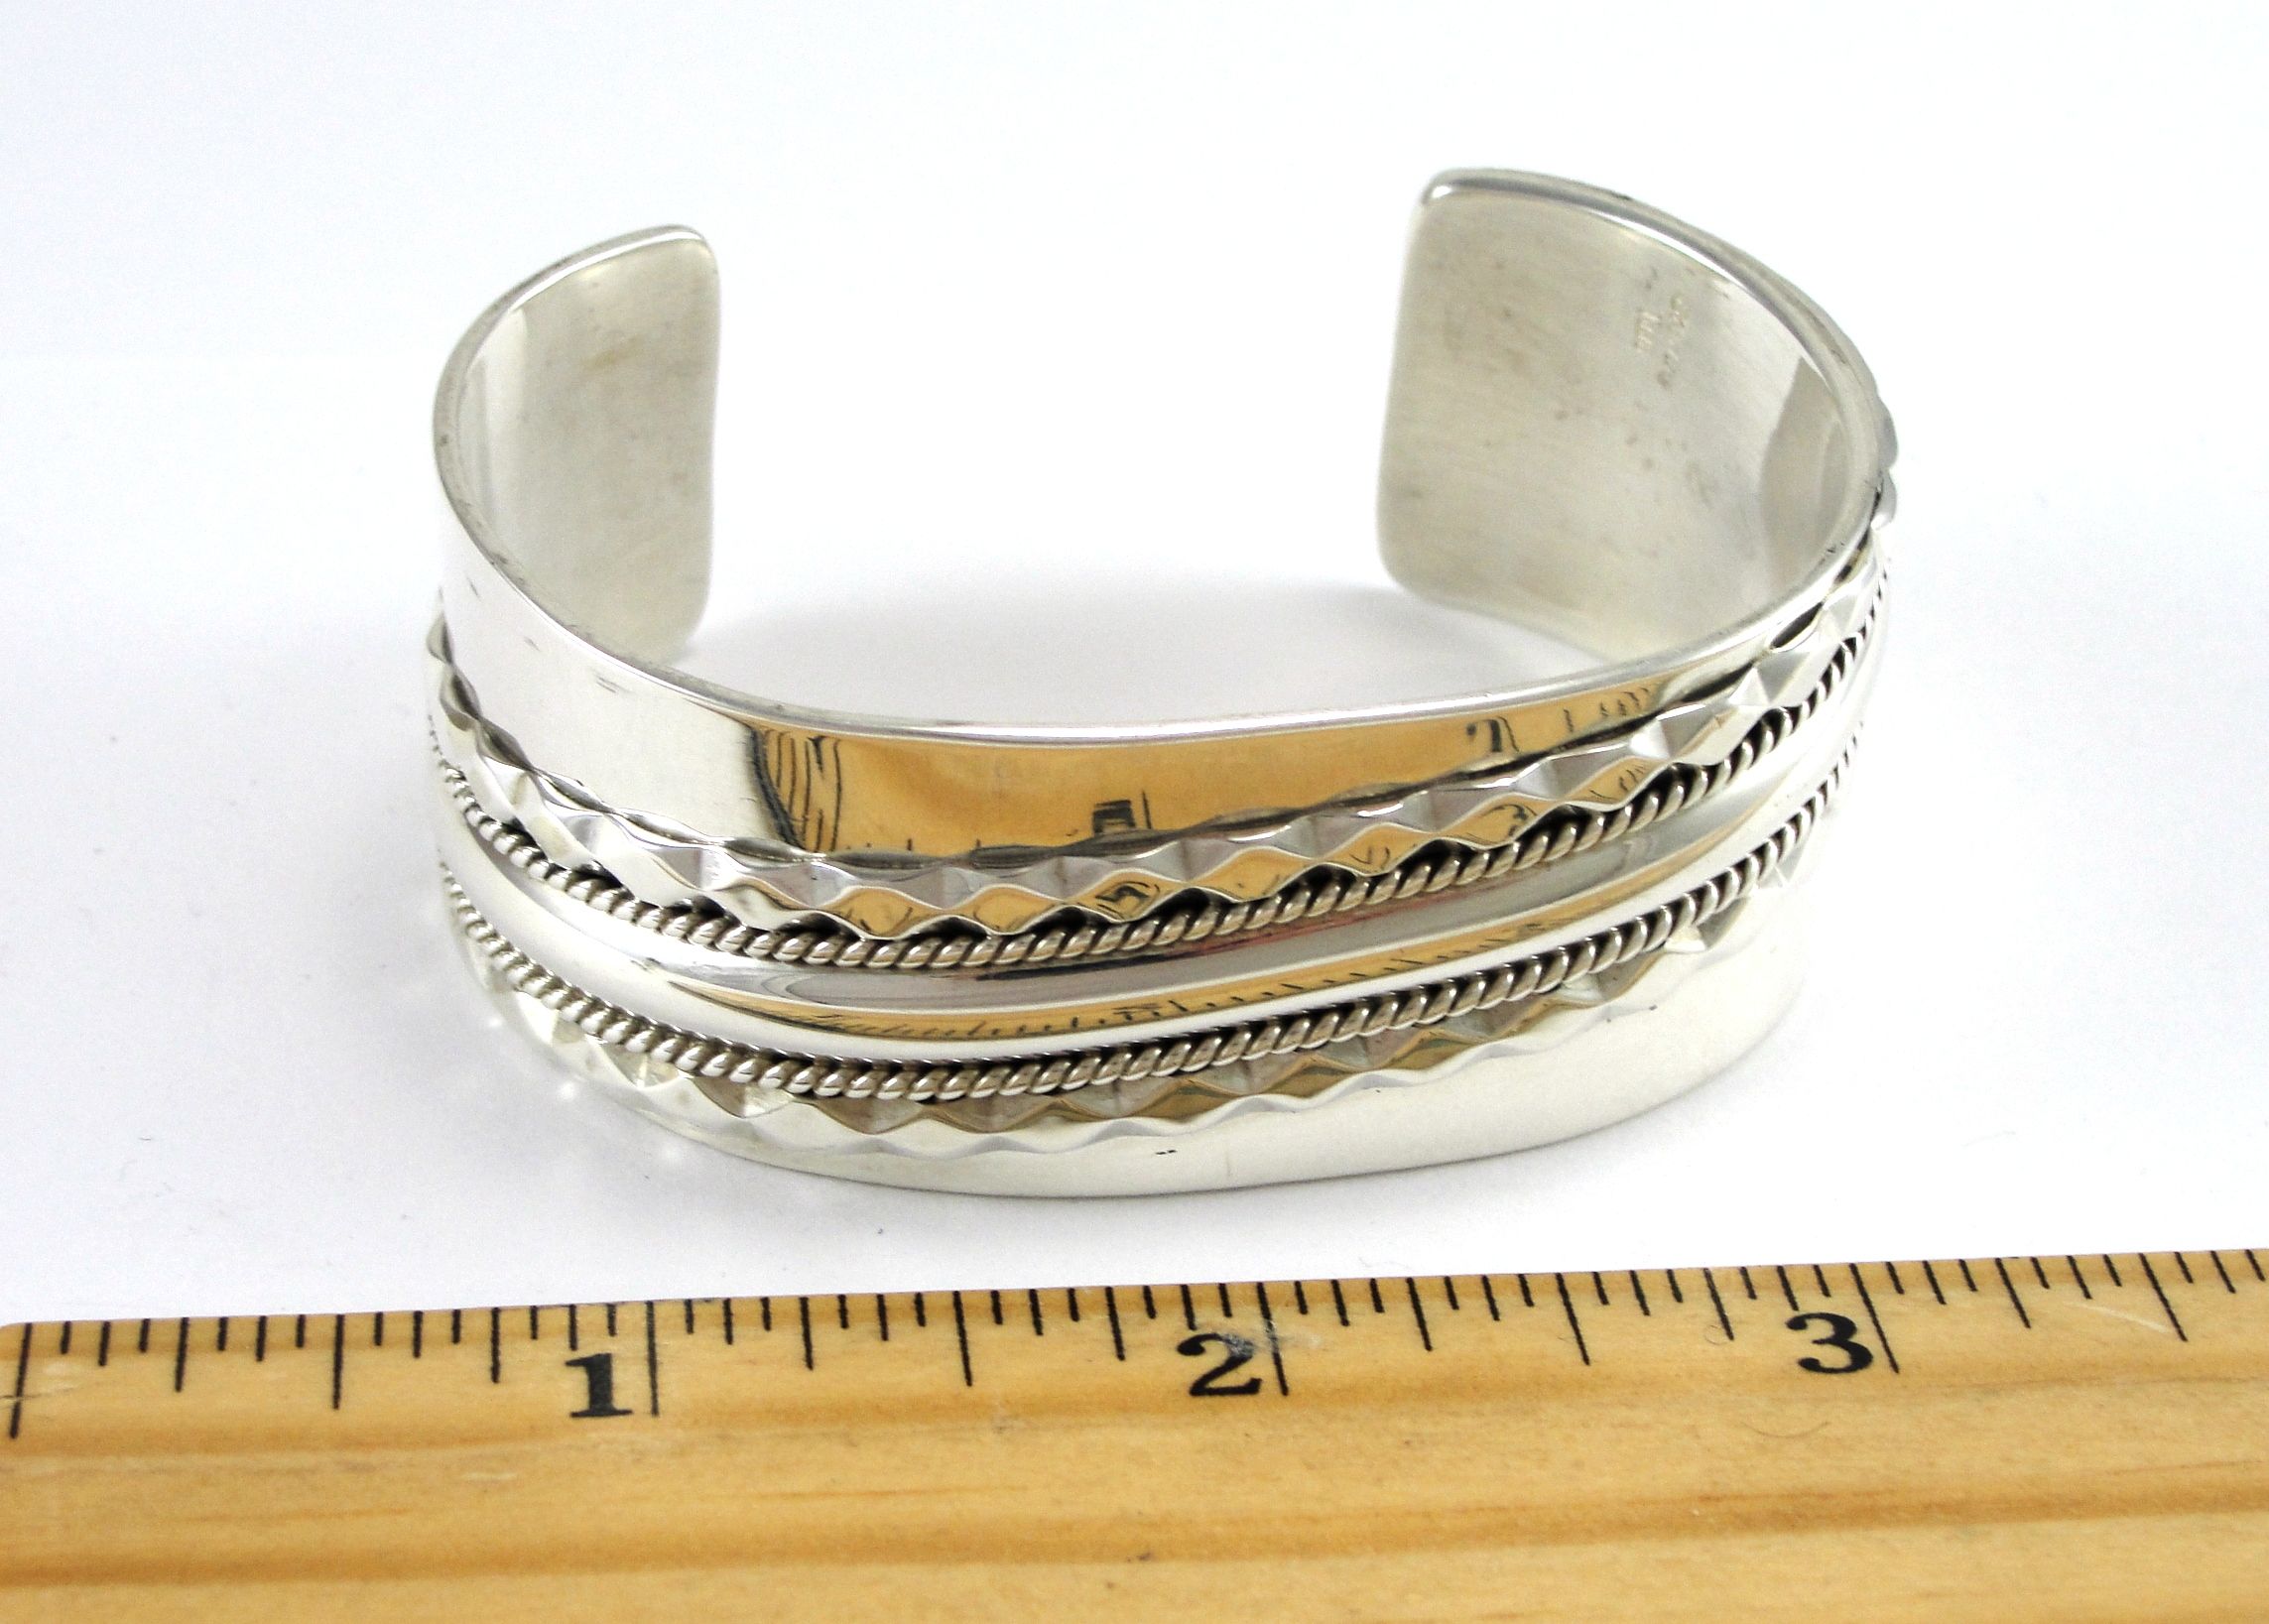 Navajo TAHE Sterling Silver Cuff Bracelet Wide Opening 6 3/4” Wrist